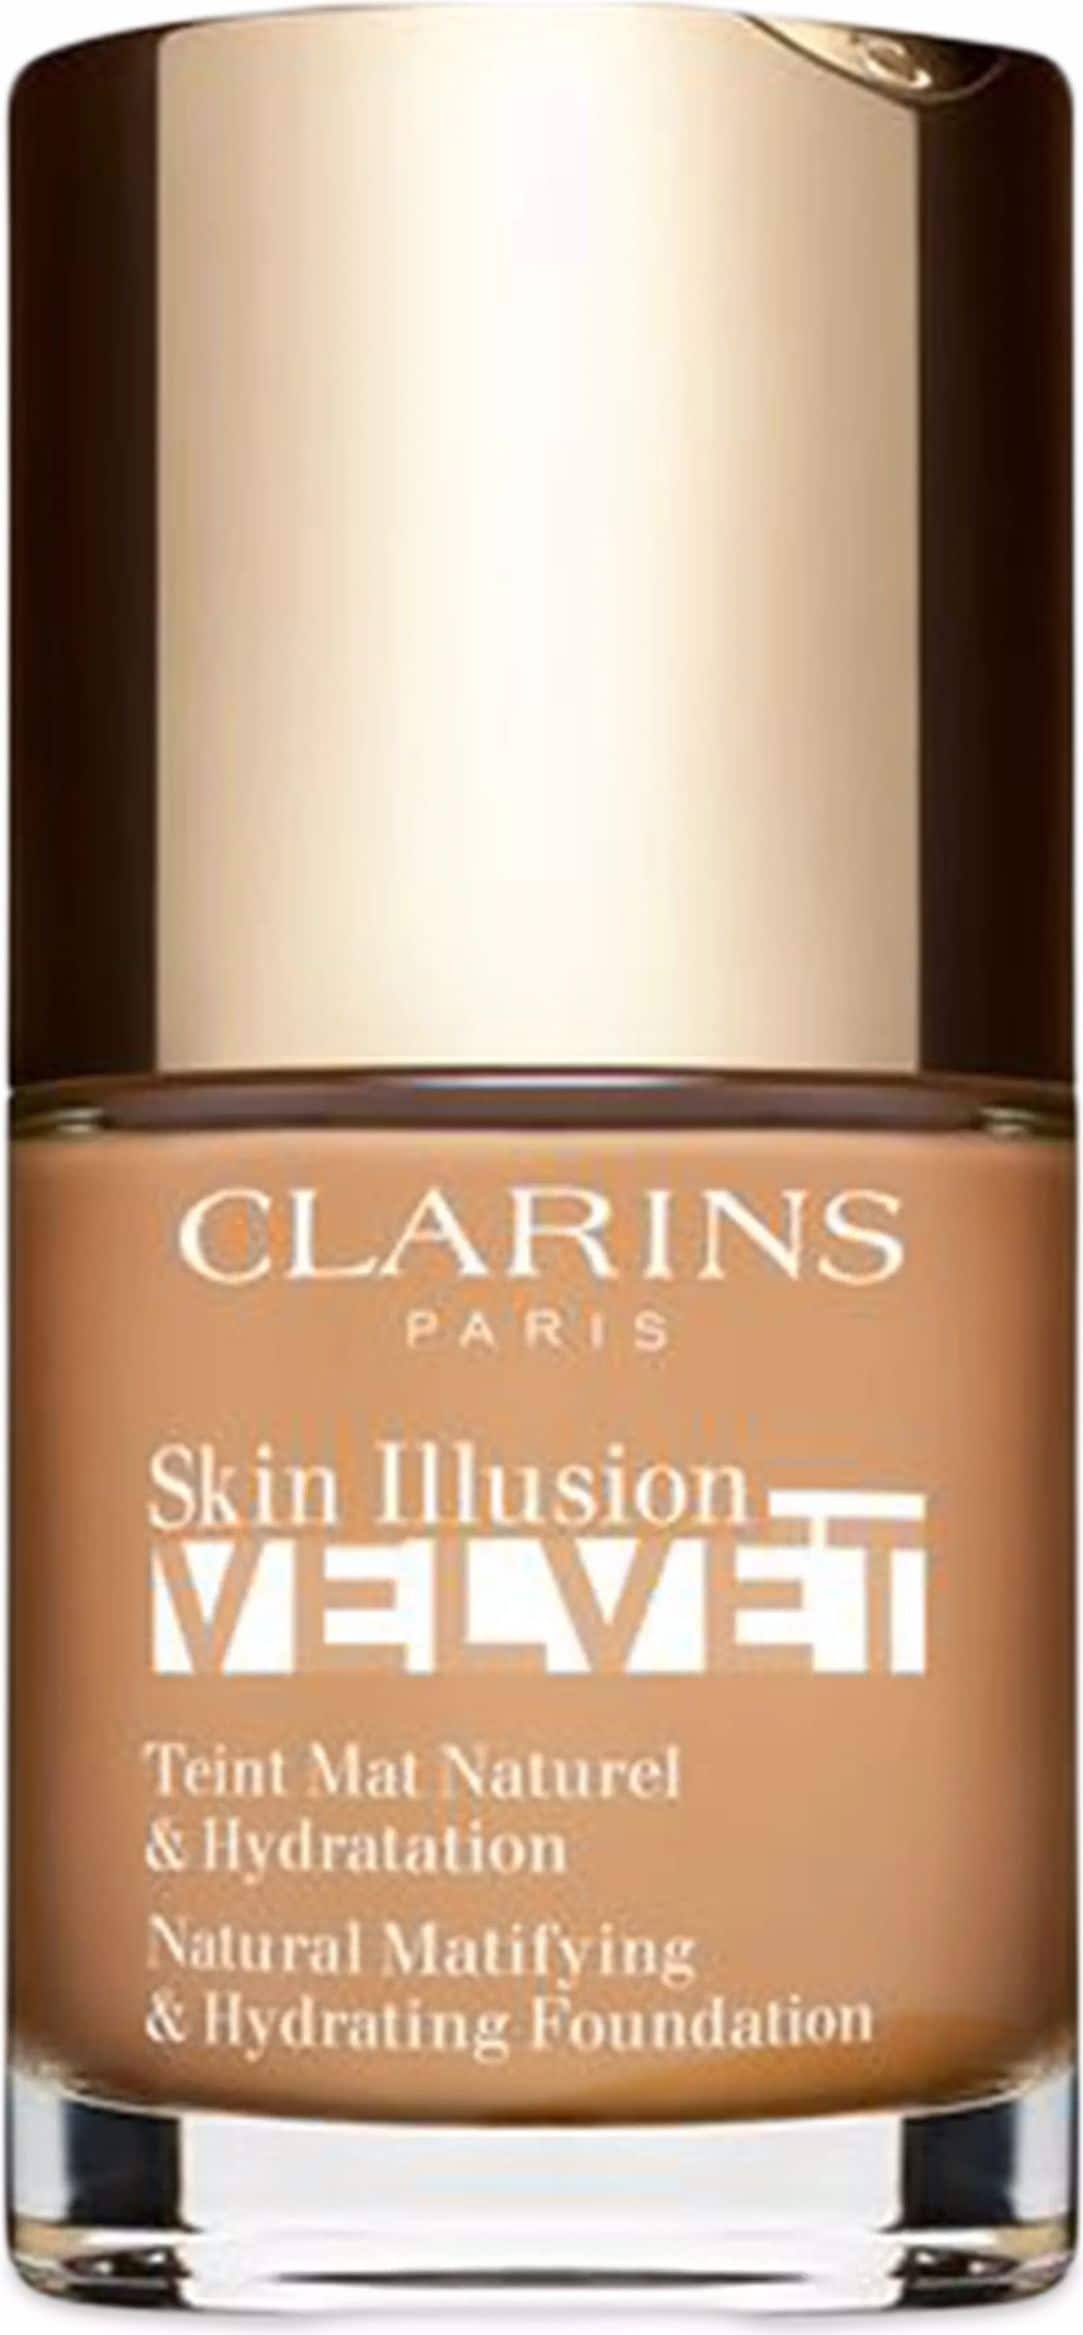 Clarins Skin Illusion Velvet